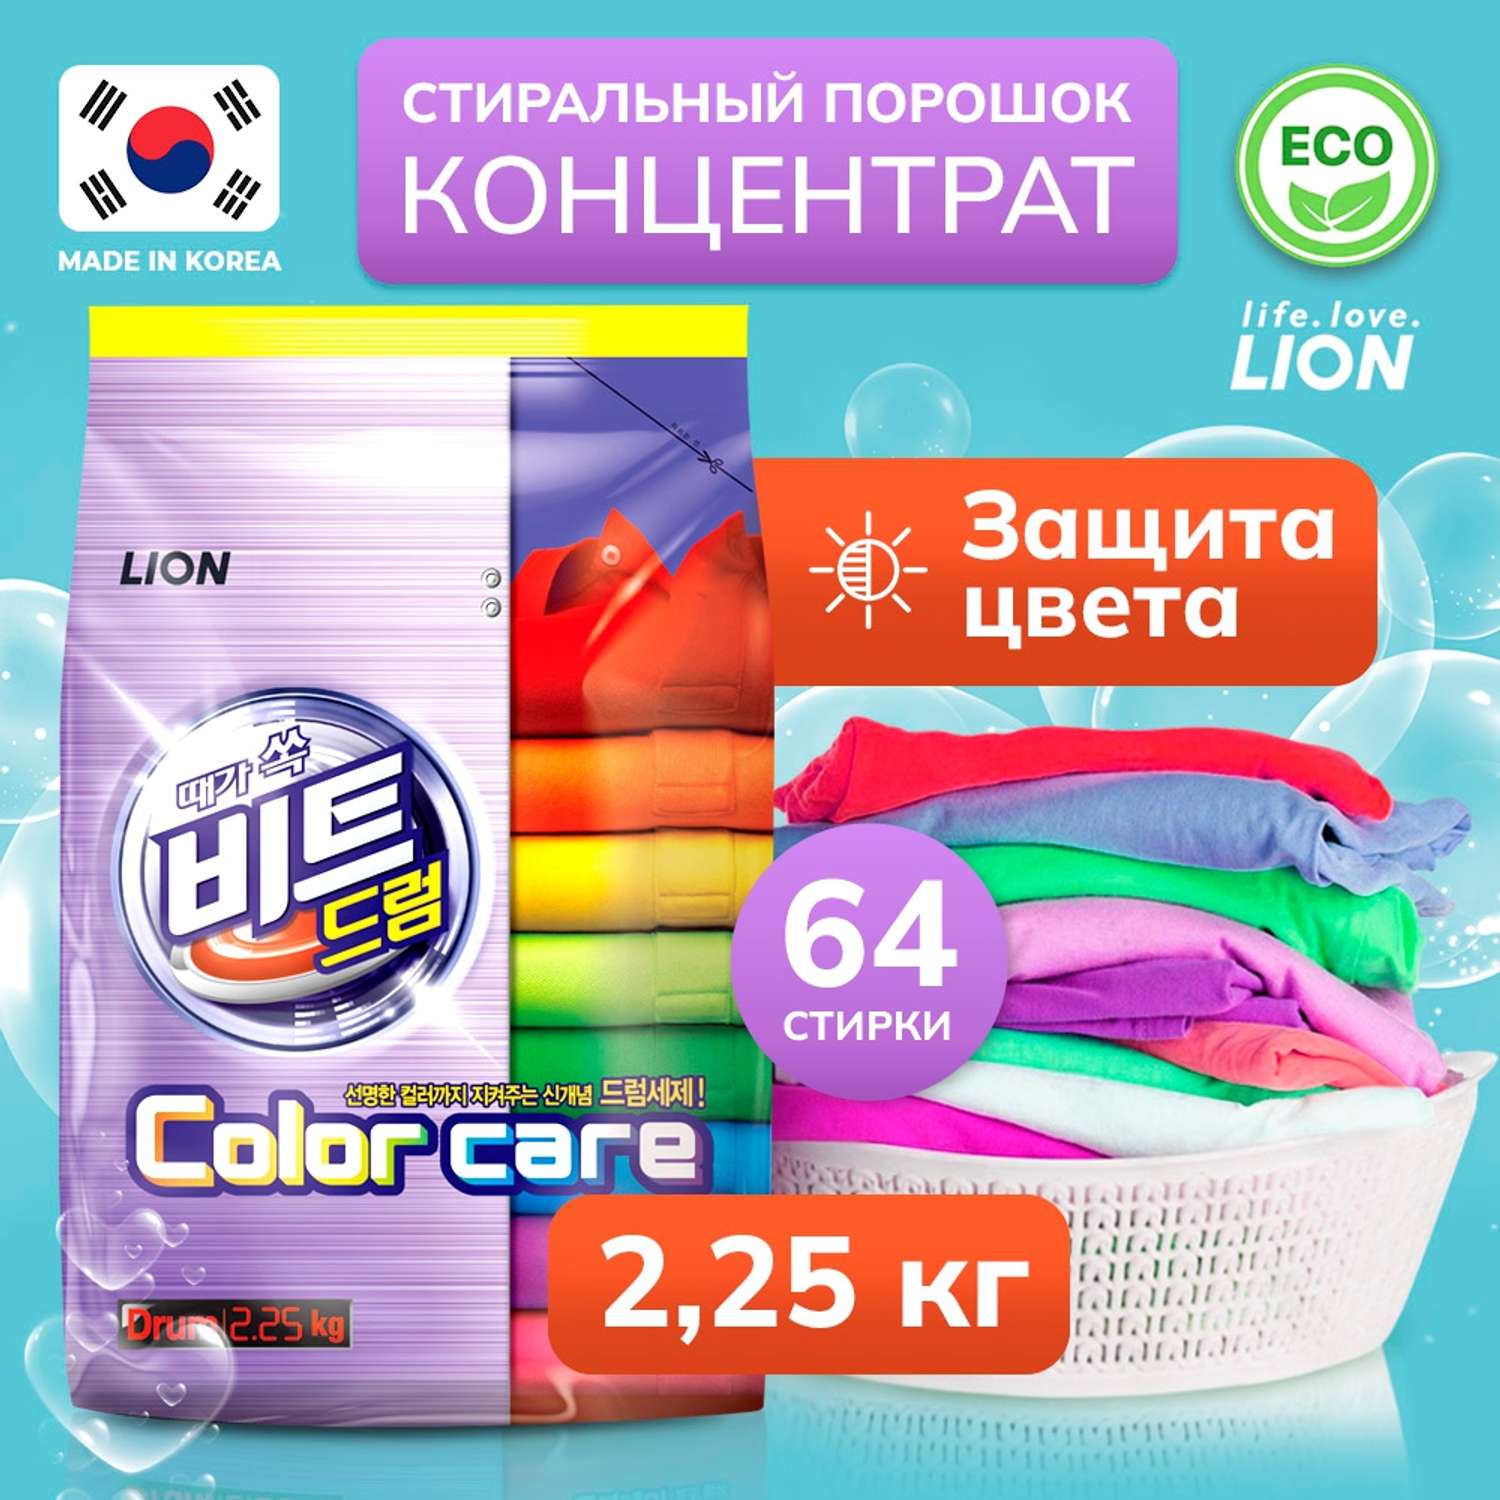 Стиральный порошок Lion «Beat drum color care» для цветного белья 2.25 кг - фото 1